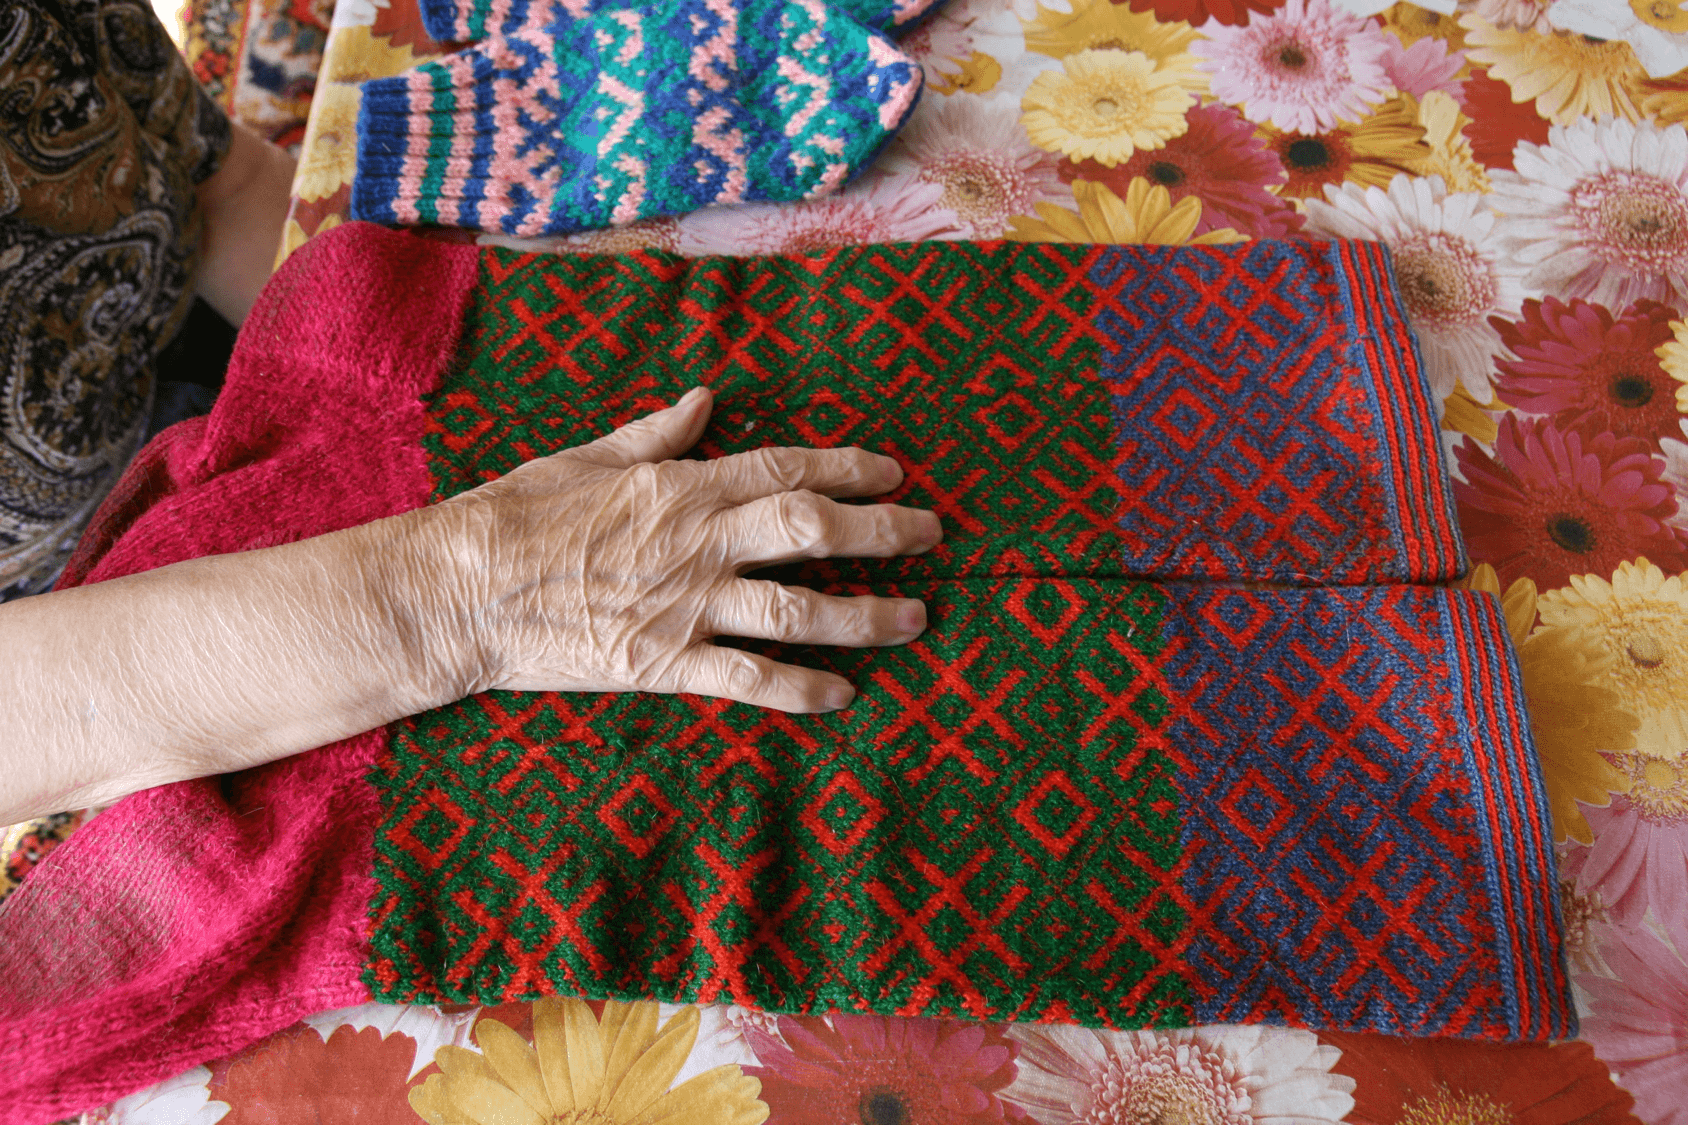 Elderly hand on knitting